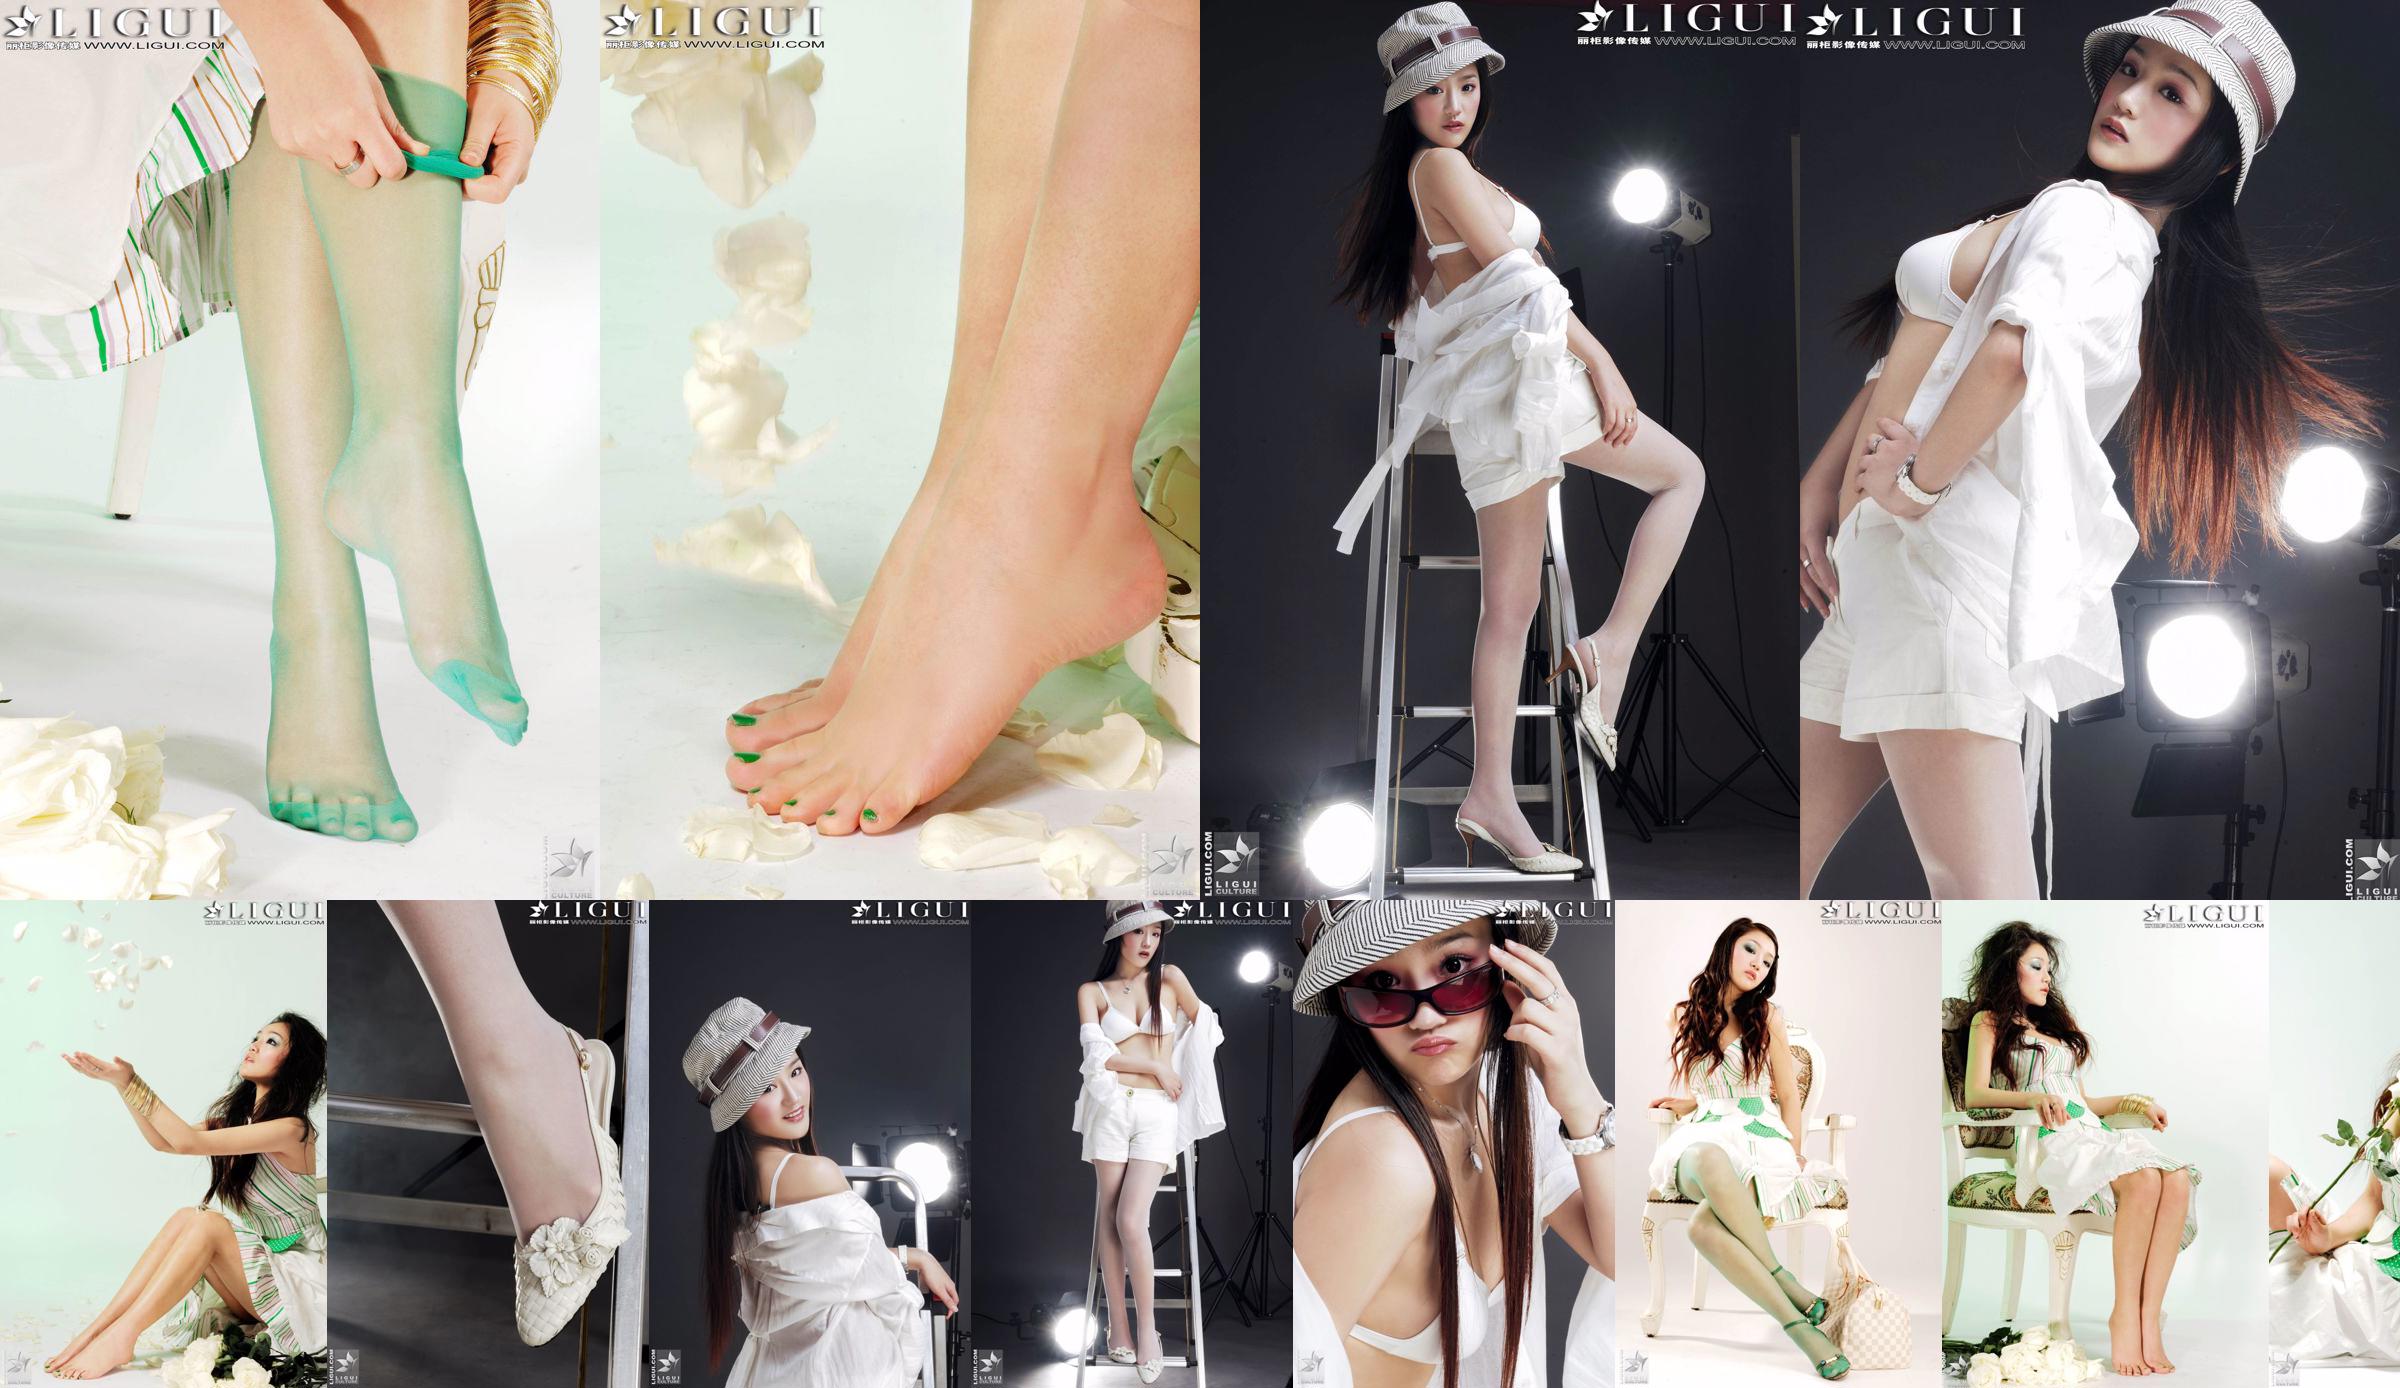 [丽 柜 贵 Fuß LiGui] Model Zhang Jingyans "Modischer Fuß" -Foto von schönen Beinen und Seidenfüßen No.18f43b Seite 1